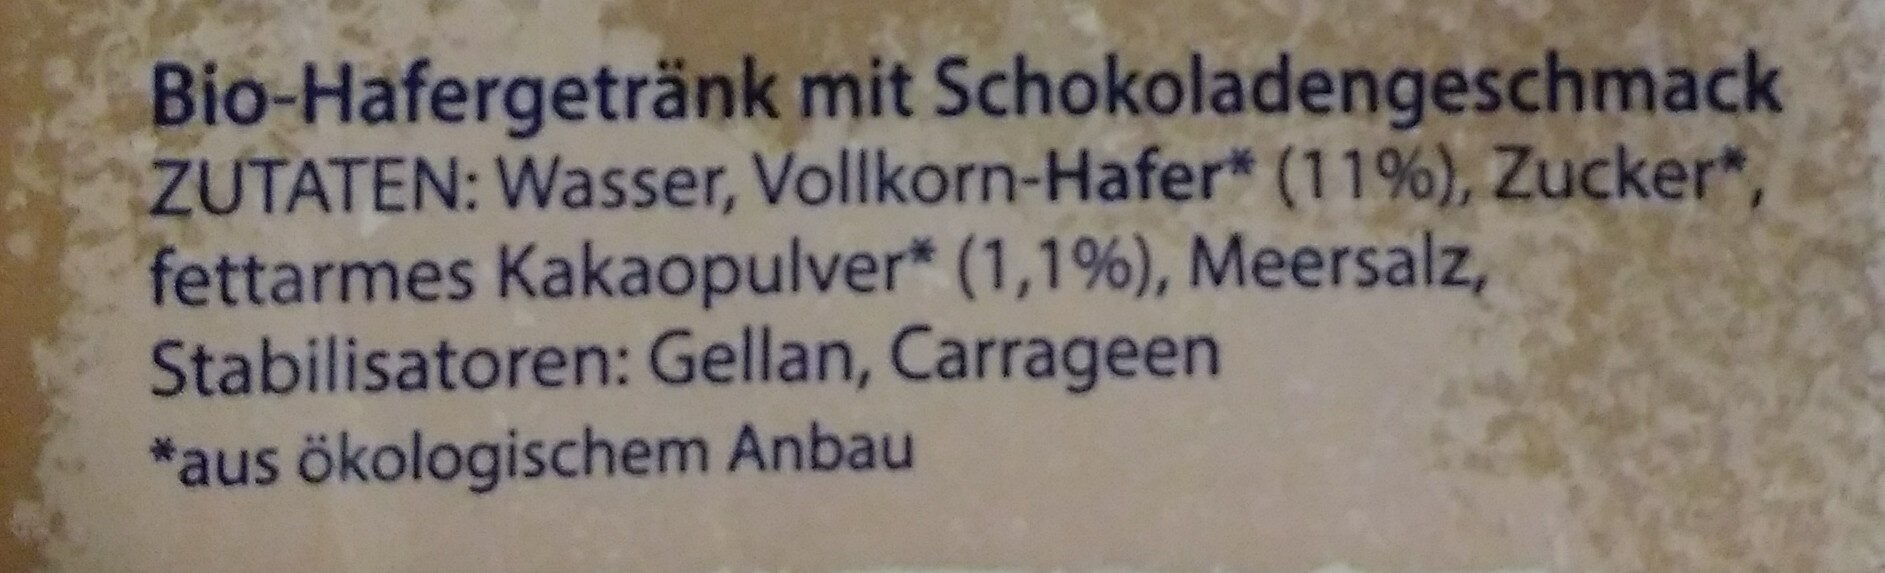 HaferLiebe Schoko - Zutaten